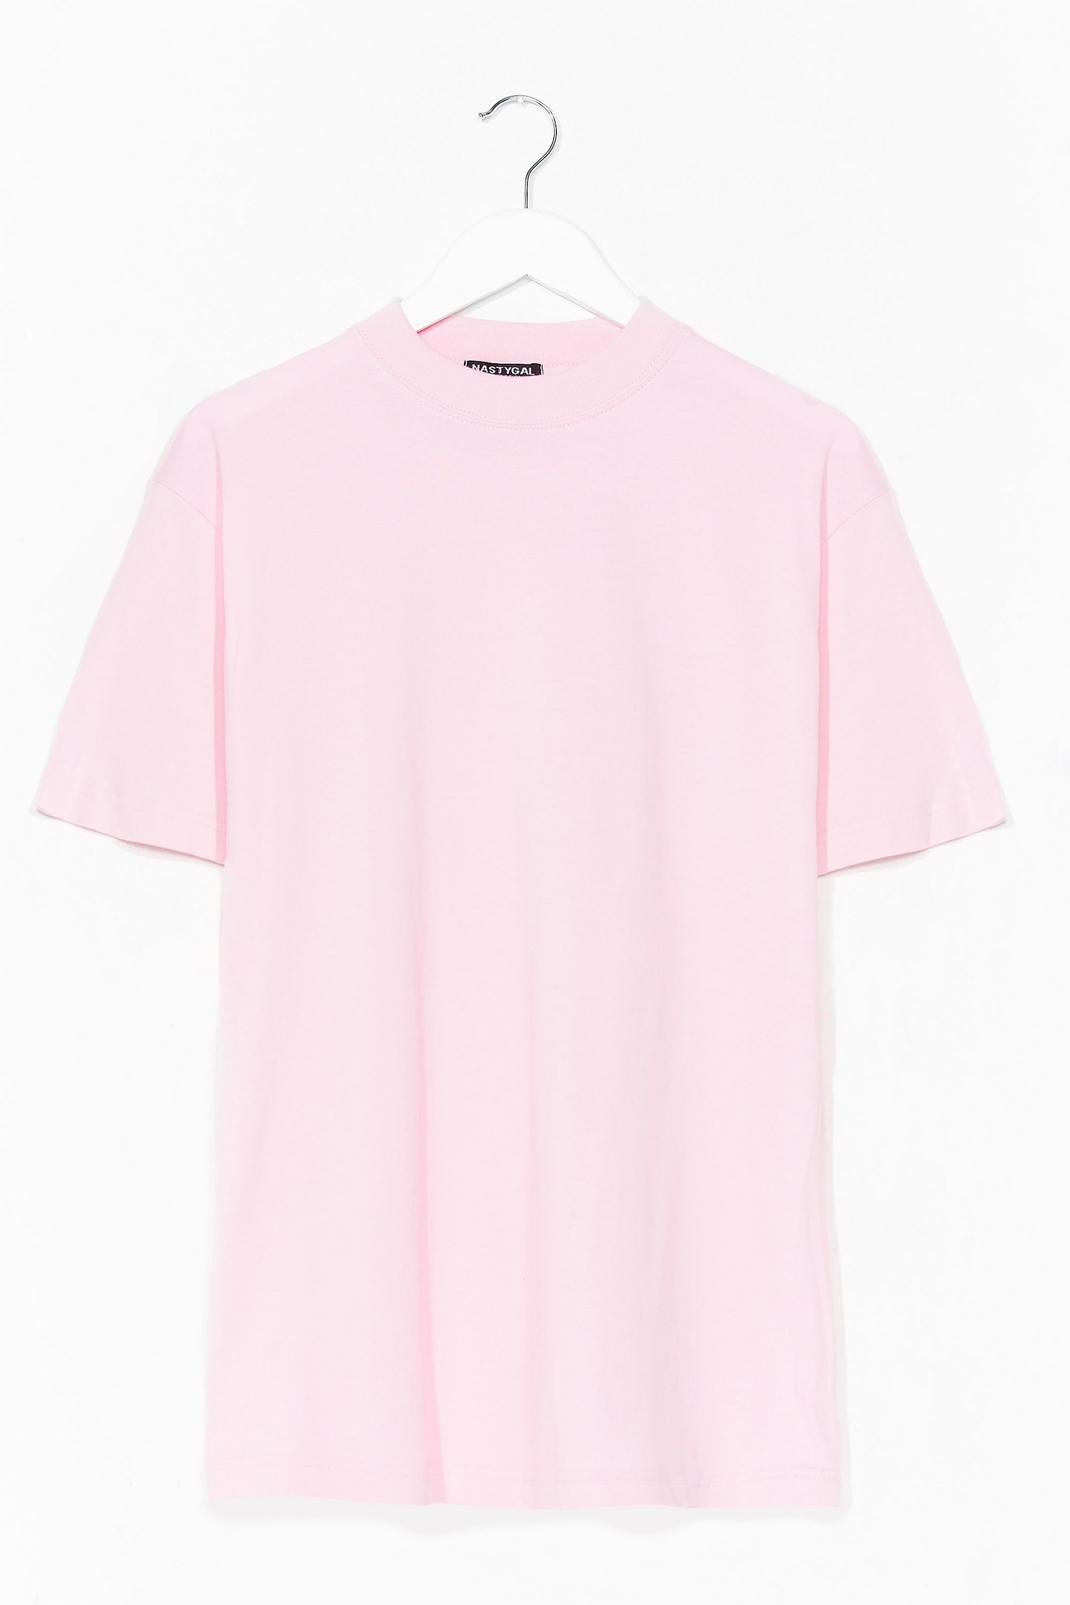 Baby pink Oversized Basic Short Sleeve T-Shirt image number 1